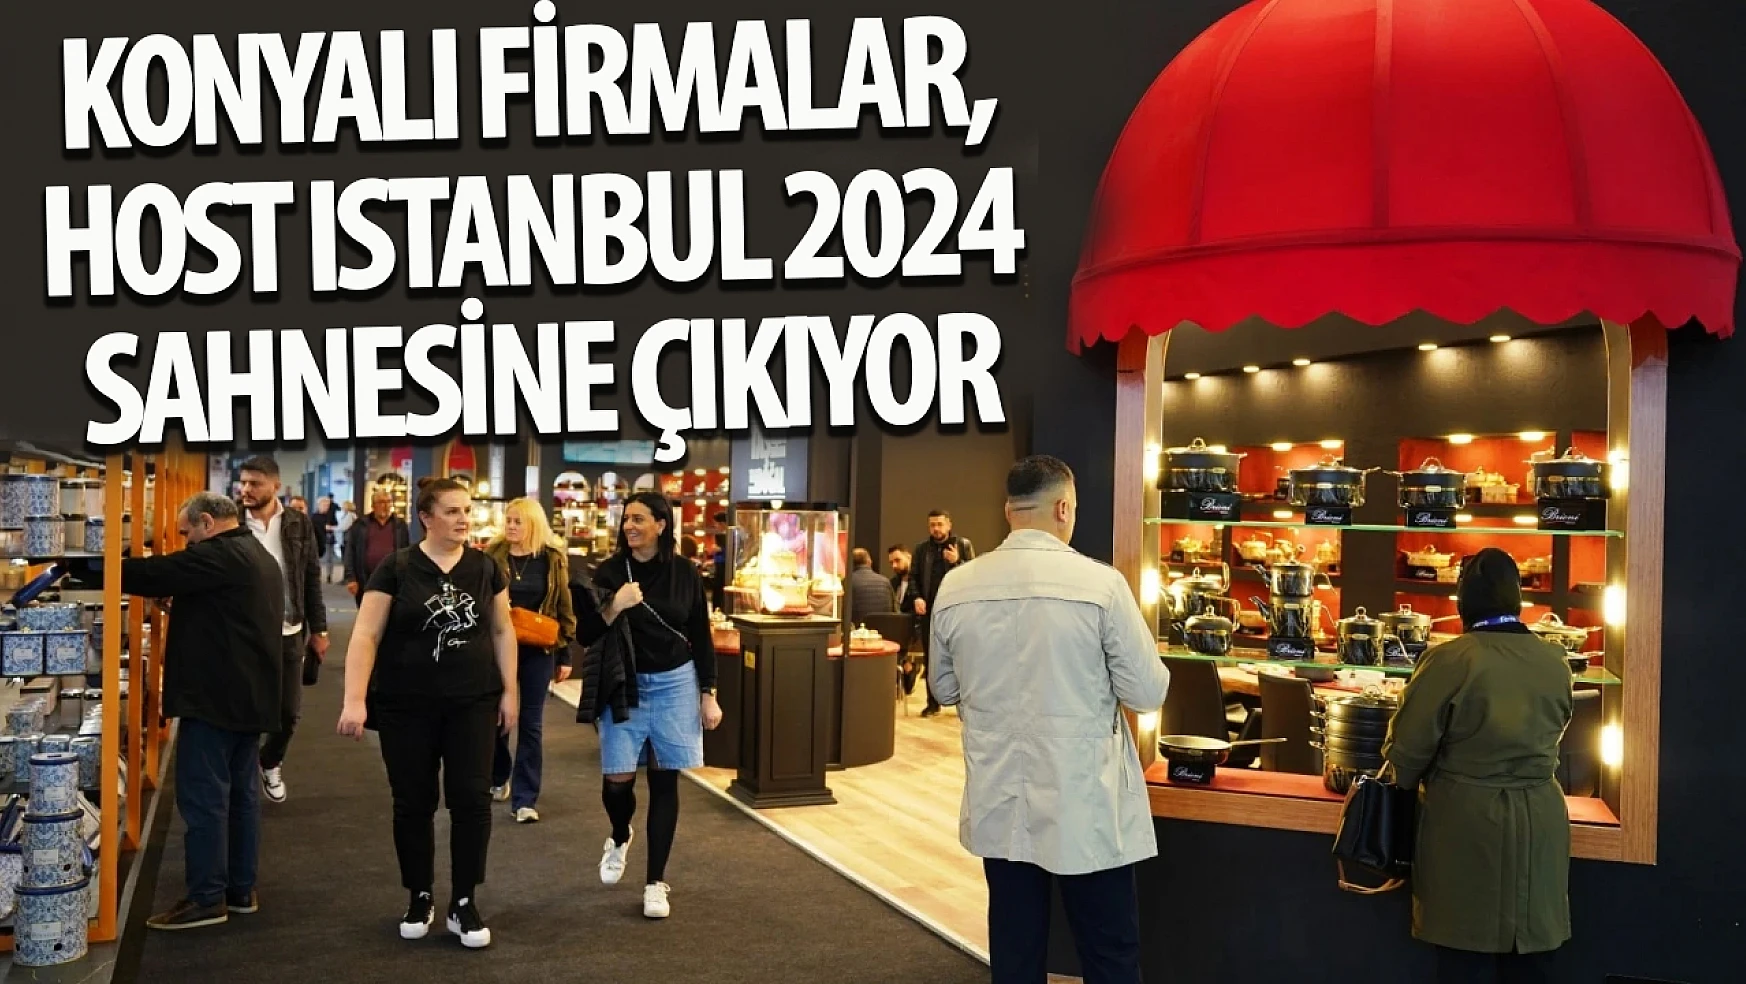 Konyalı firmalar, HOST Istanbul 2024 sahnesine çıkıyor!